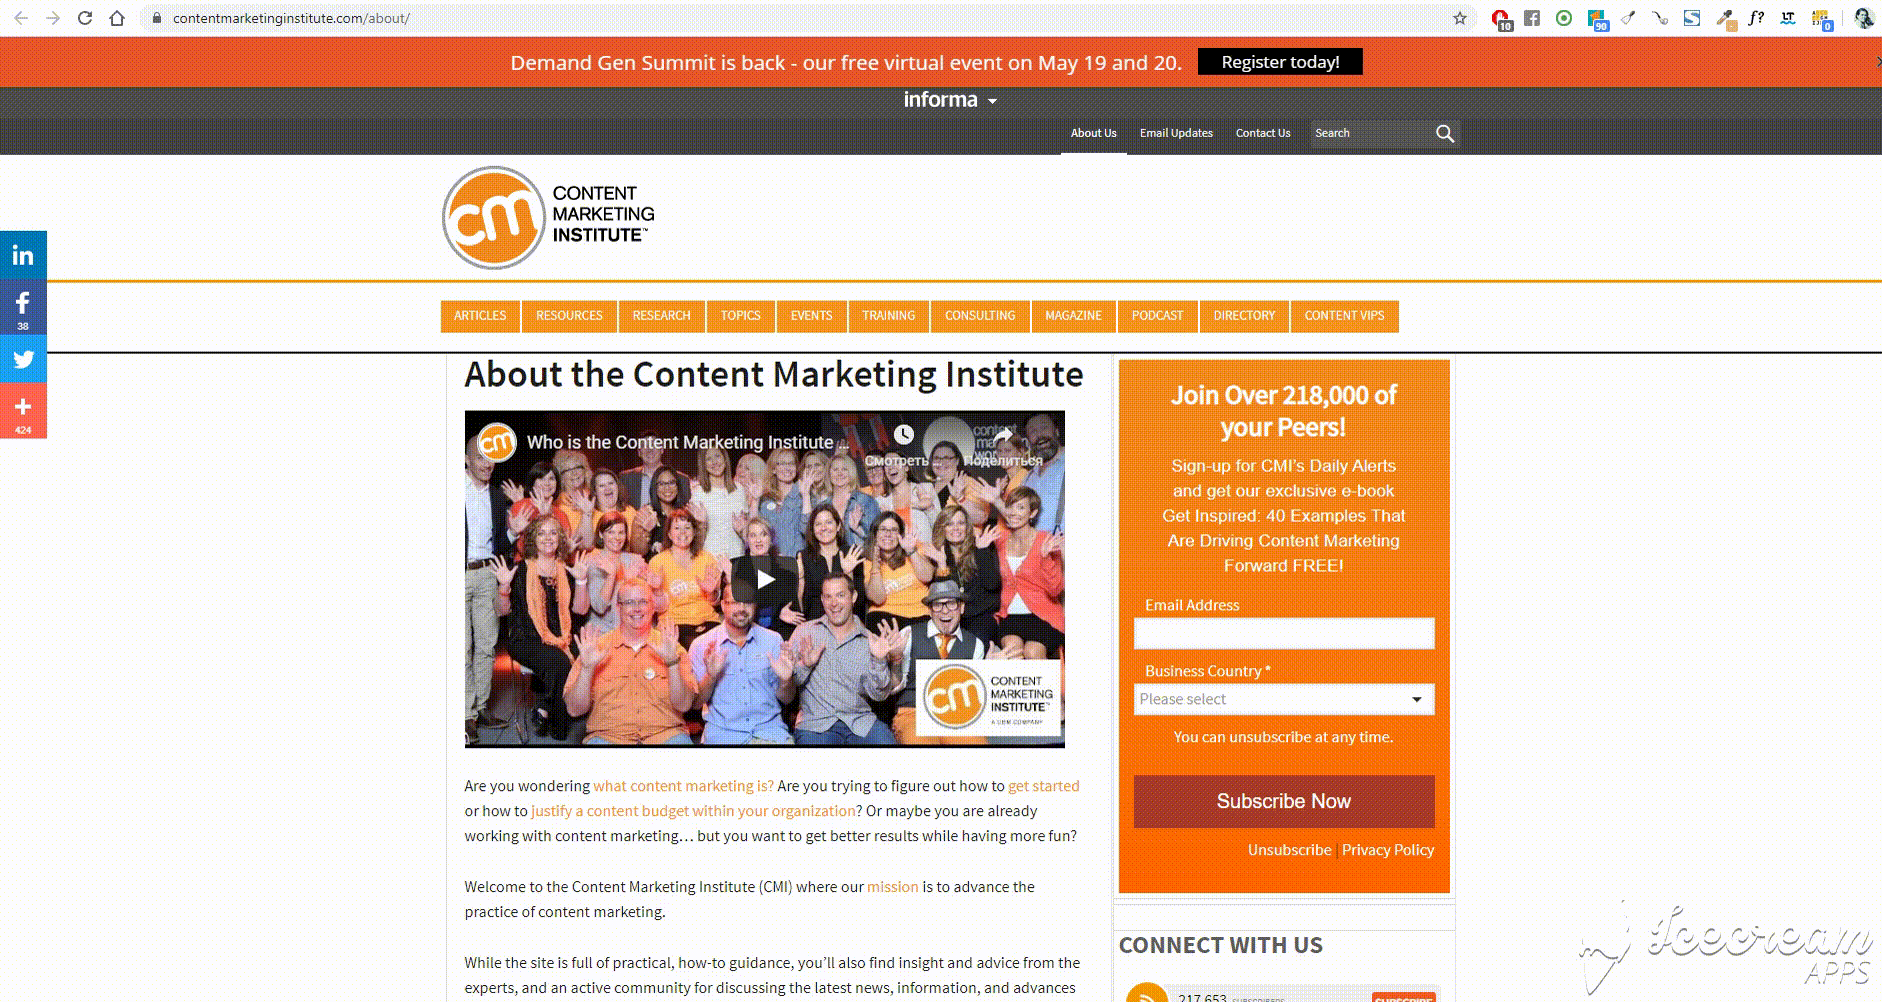 content marketing institute дает пользователям четкое понимание, куда идти дальше и что делать на сайте. Источник https://contentmarketinginstitute.com/about/